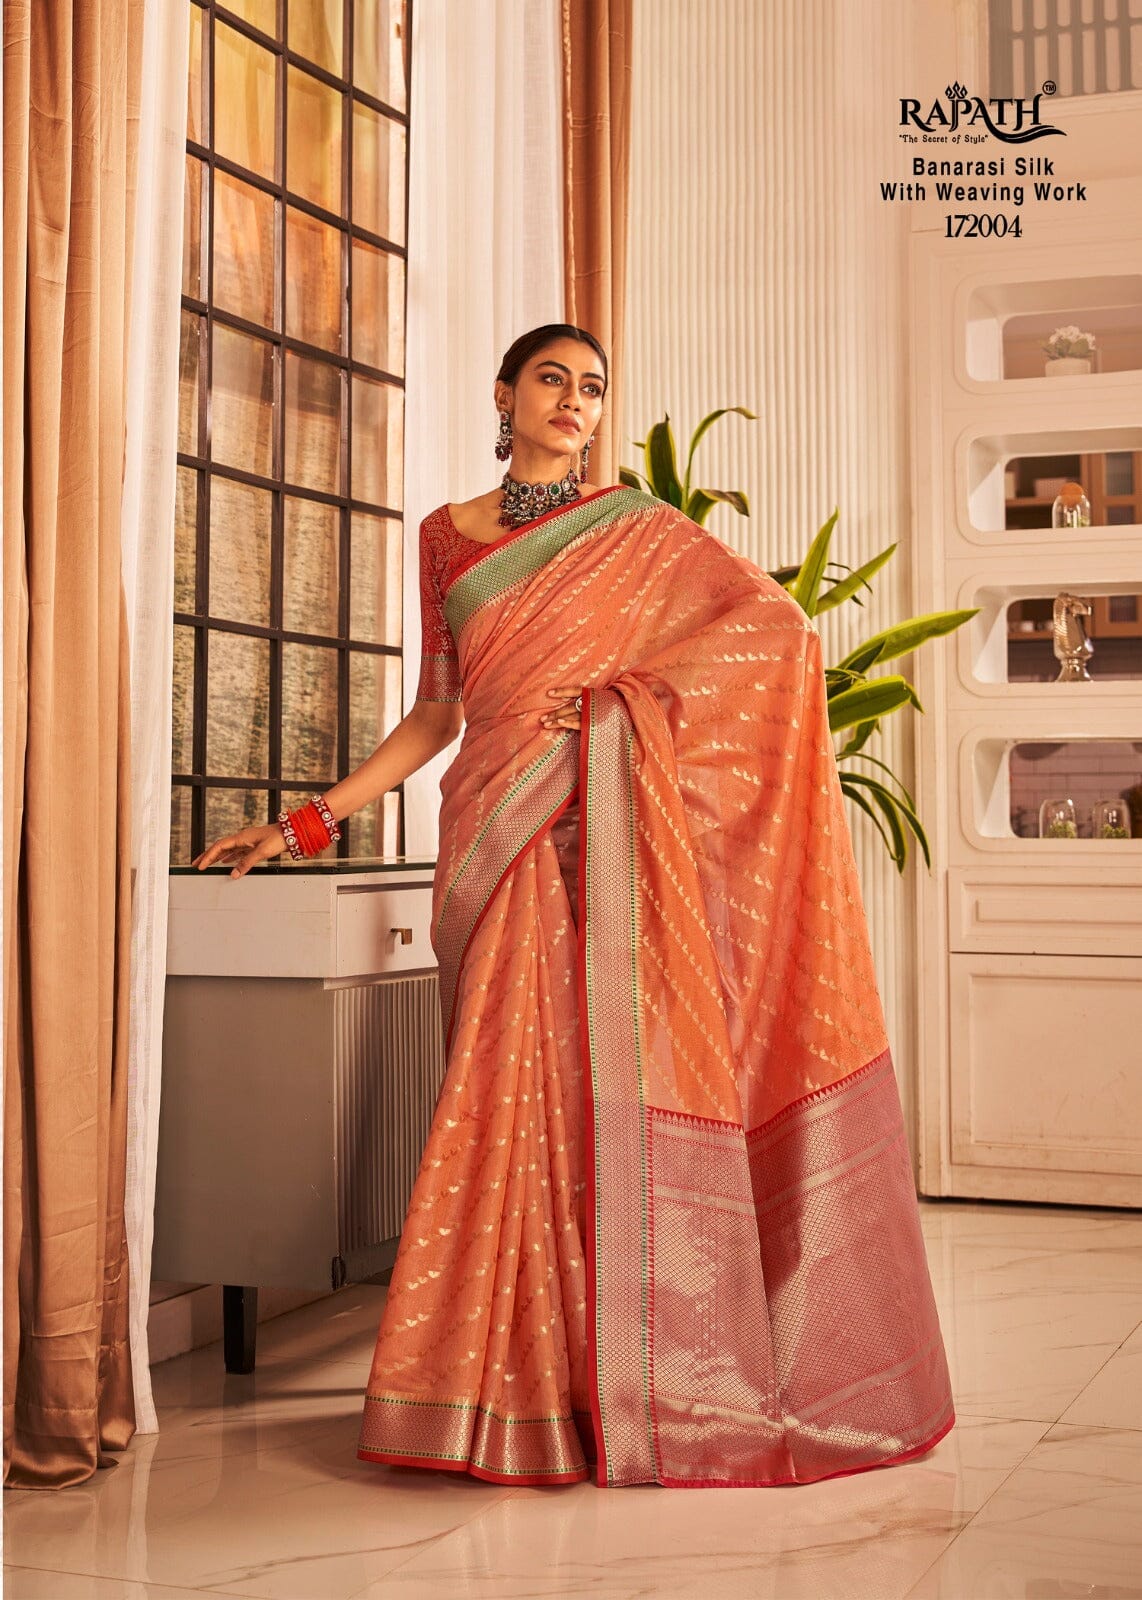 172004 Rajpath Vaijanti Banarasi Silk With Weaving Saree Silk Saree Shopin Di Apparels 